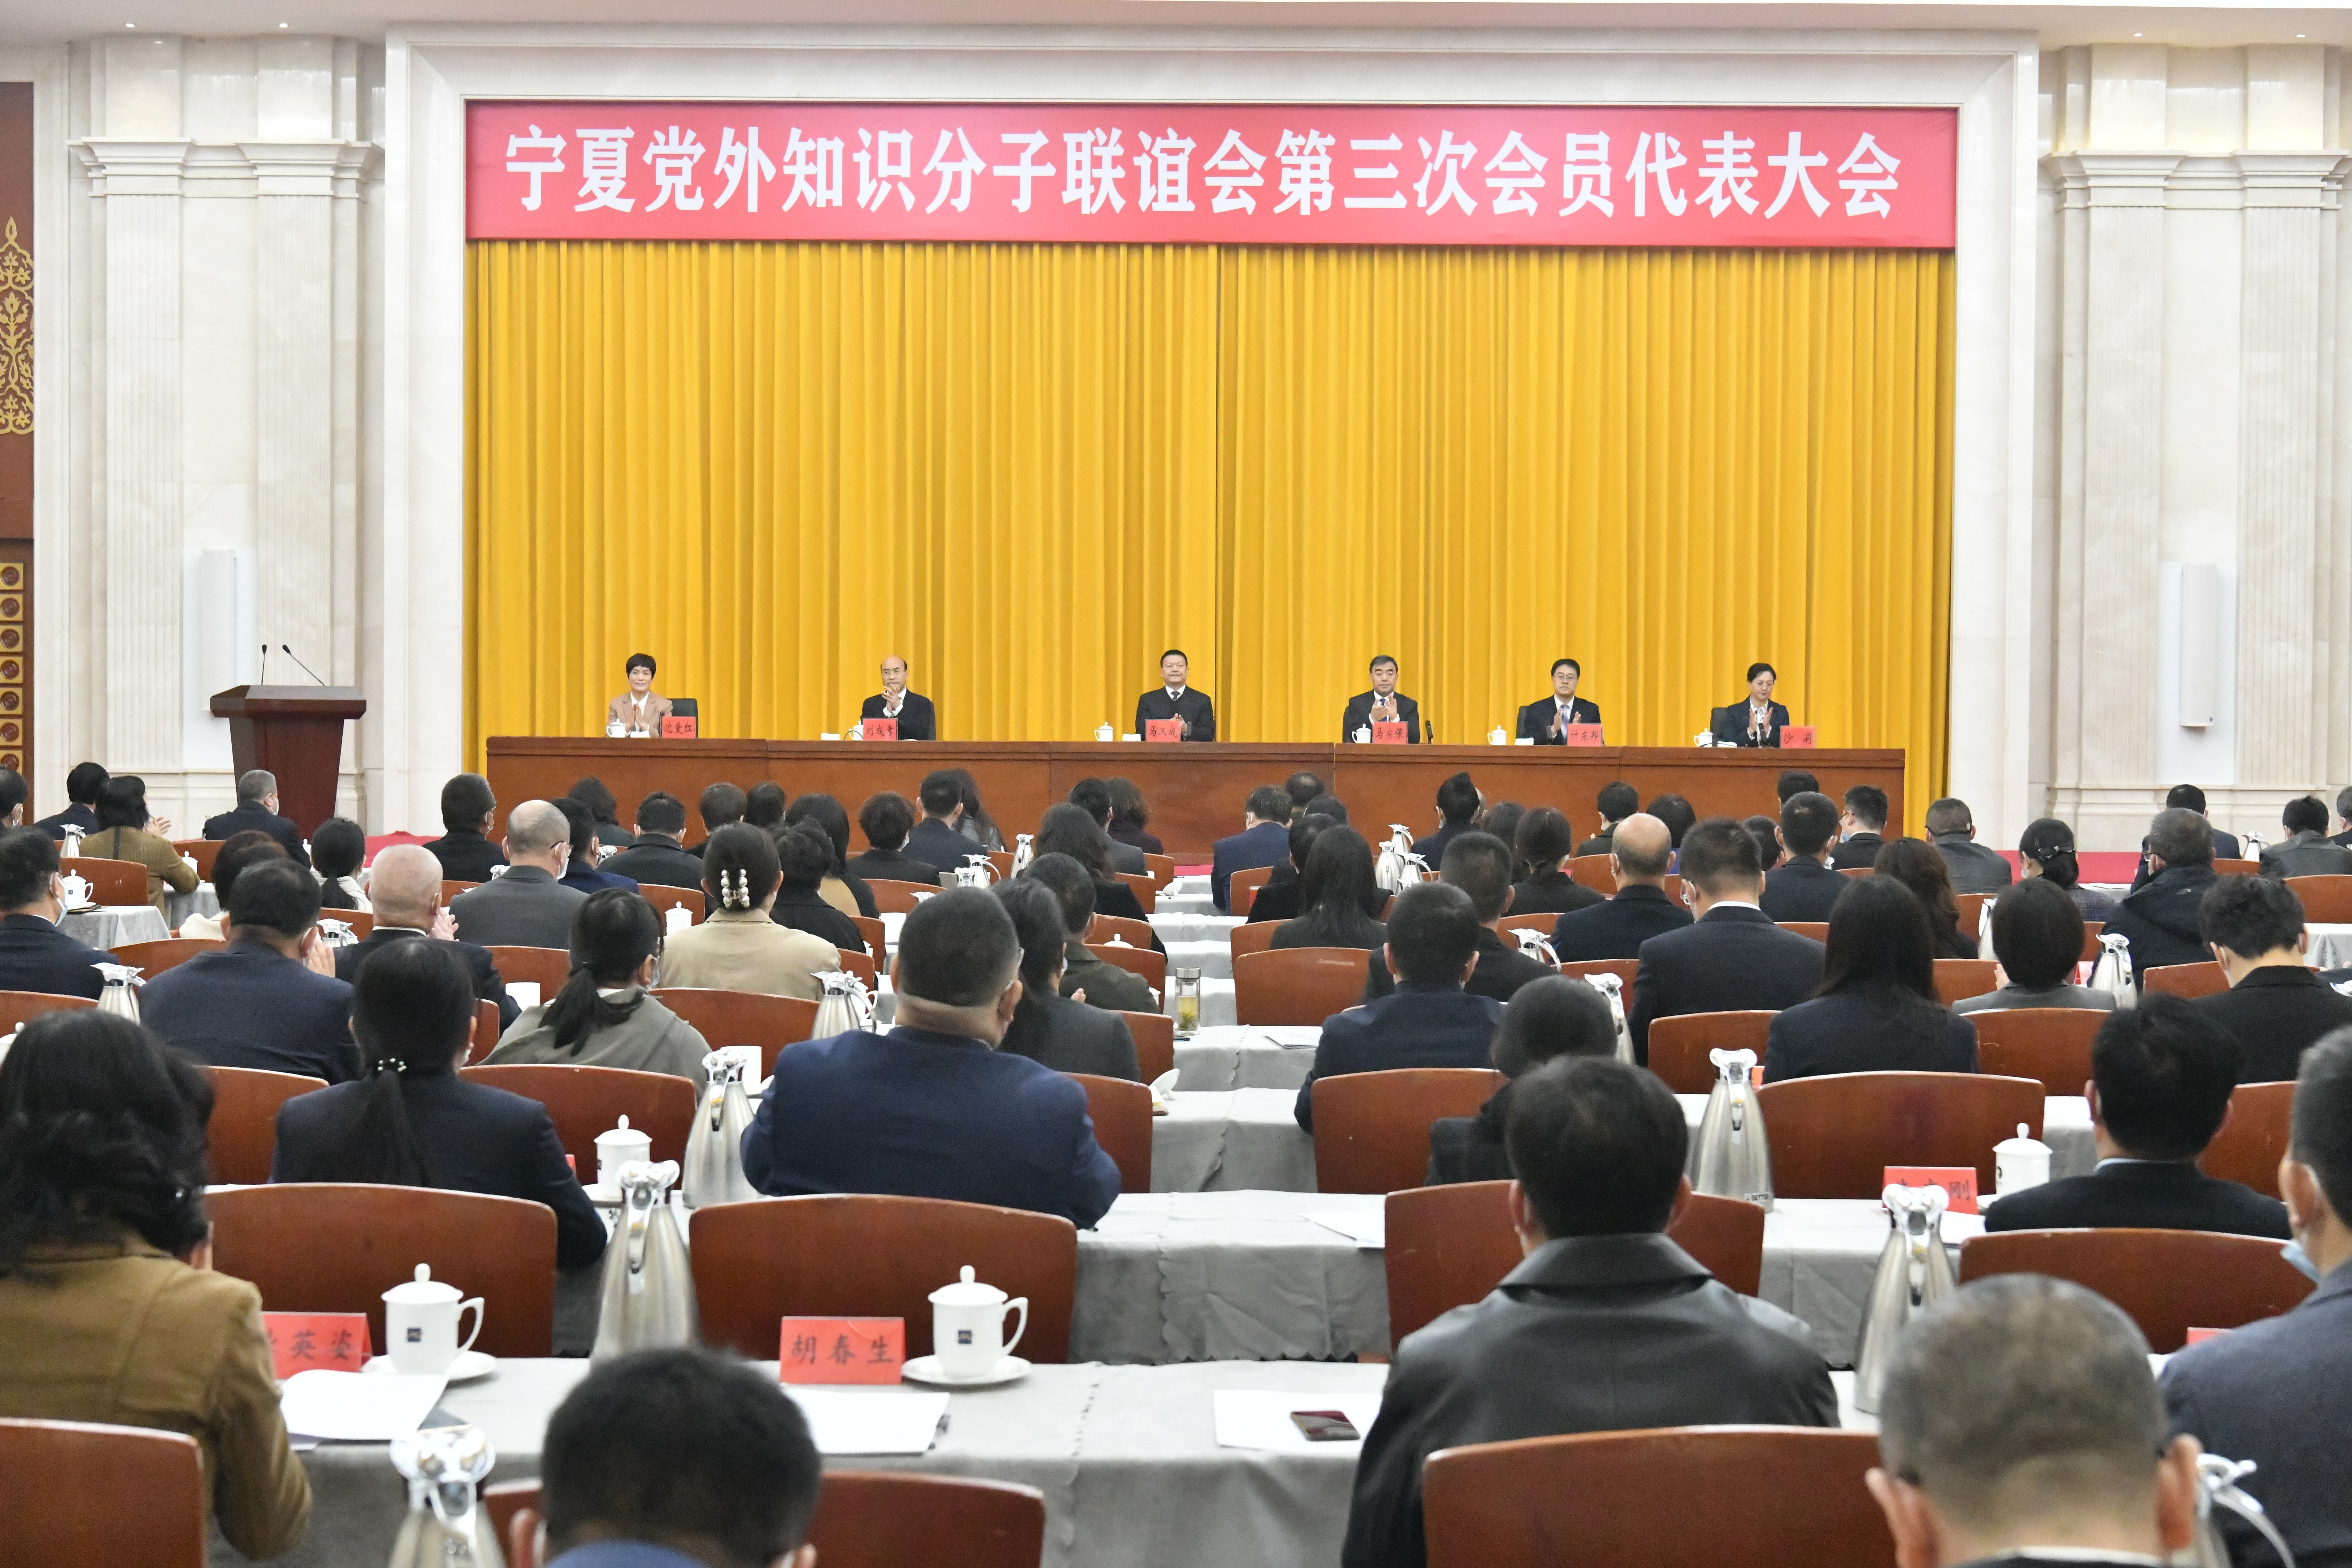 宁夏党外知识分子联谊会召开第三次会员代表大会